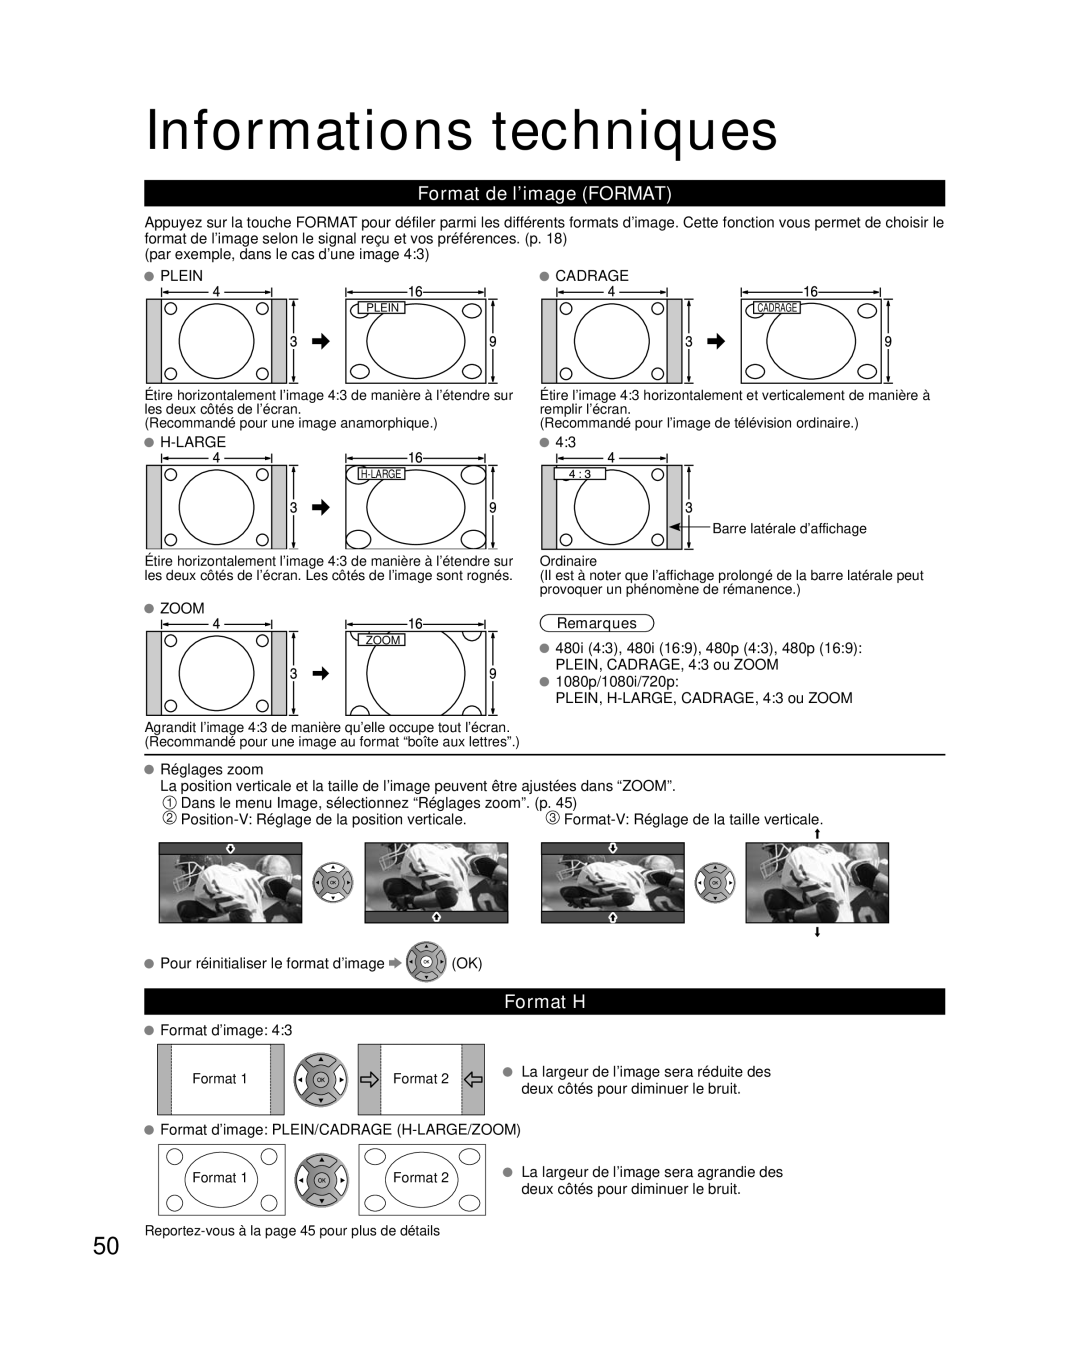 Panasonic TC-L37E3, TC-L32E3, TC-L42E30 owner manual Informations techniques, Format de l’image FORMAT, Format H, Remarques 